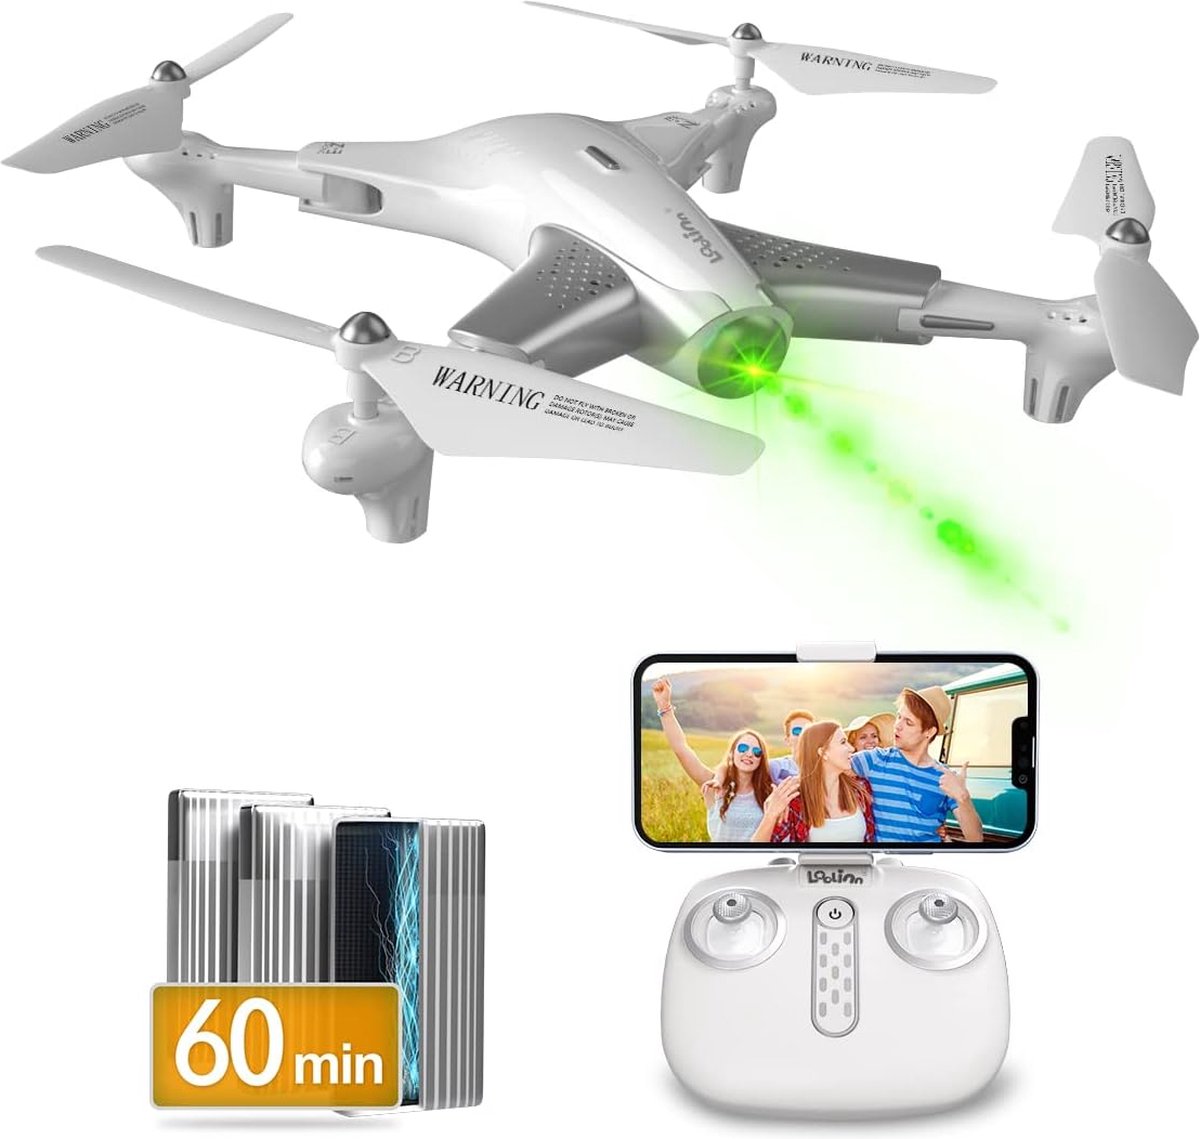 Equivera Drone voor Kinderen - Wit - Kinder Drone - Drone voor Beginners - Drone met Camera